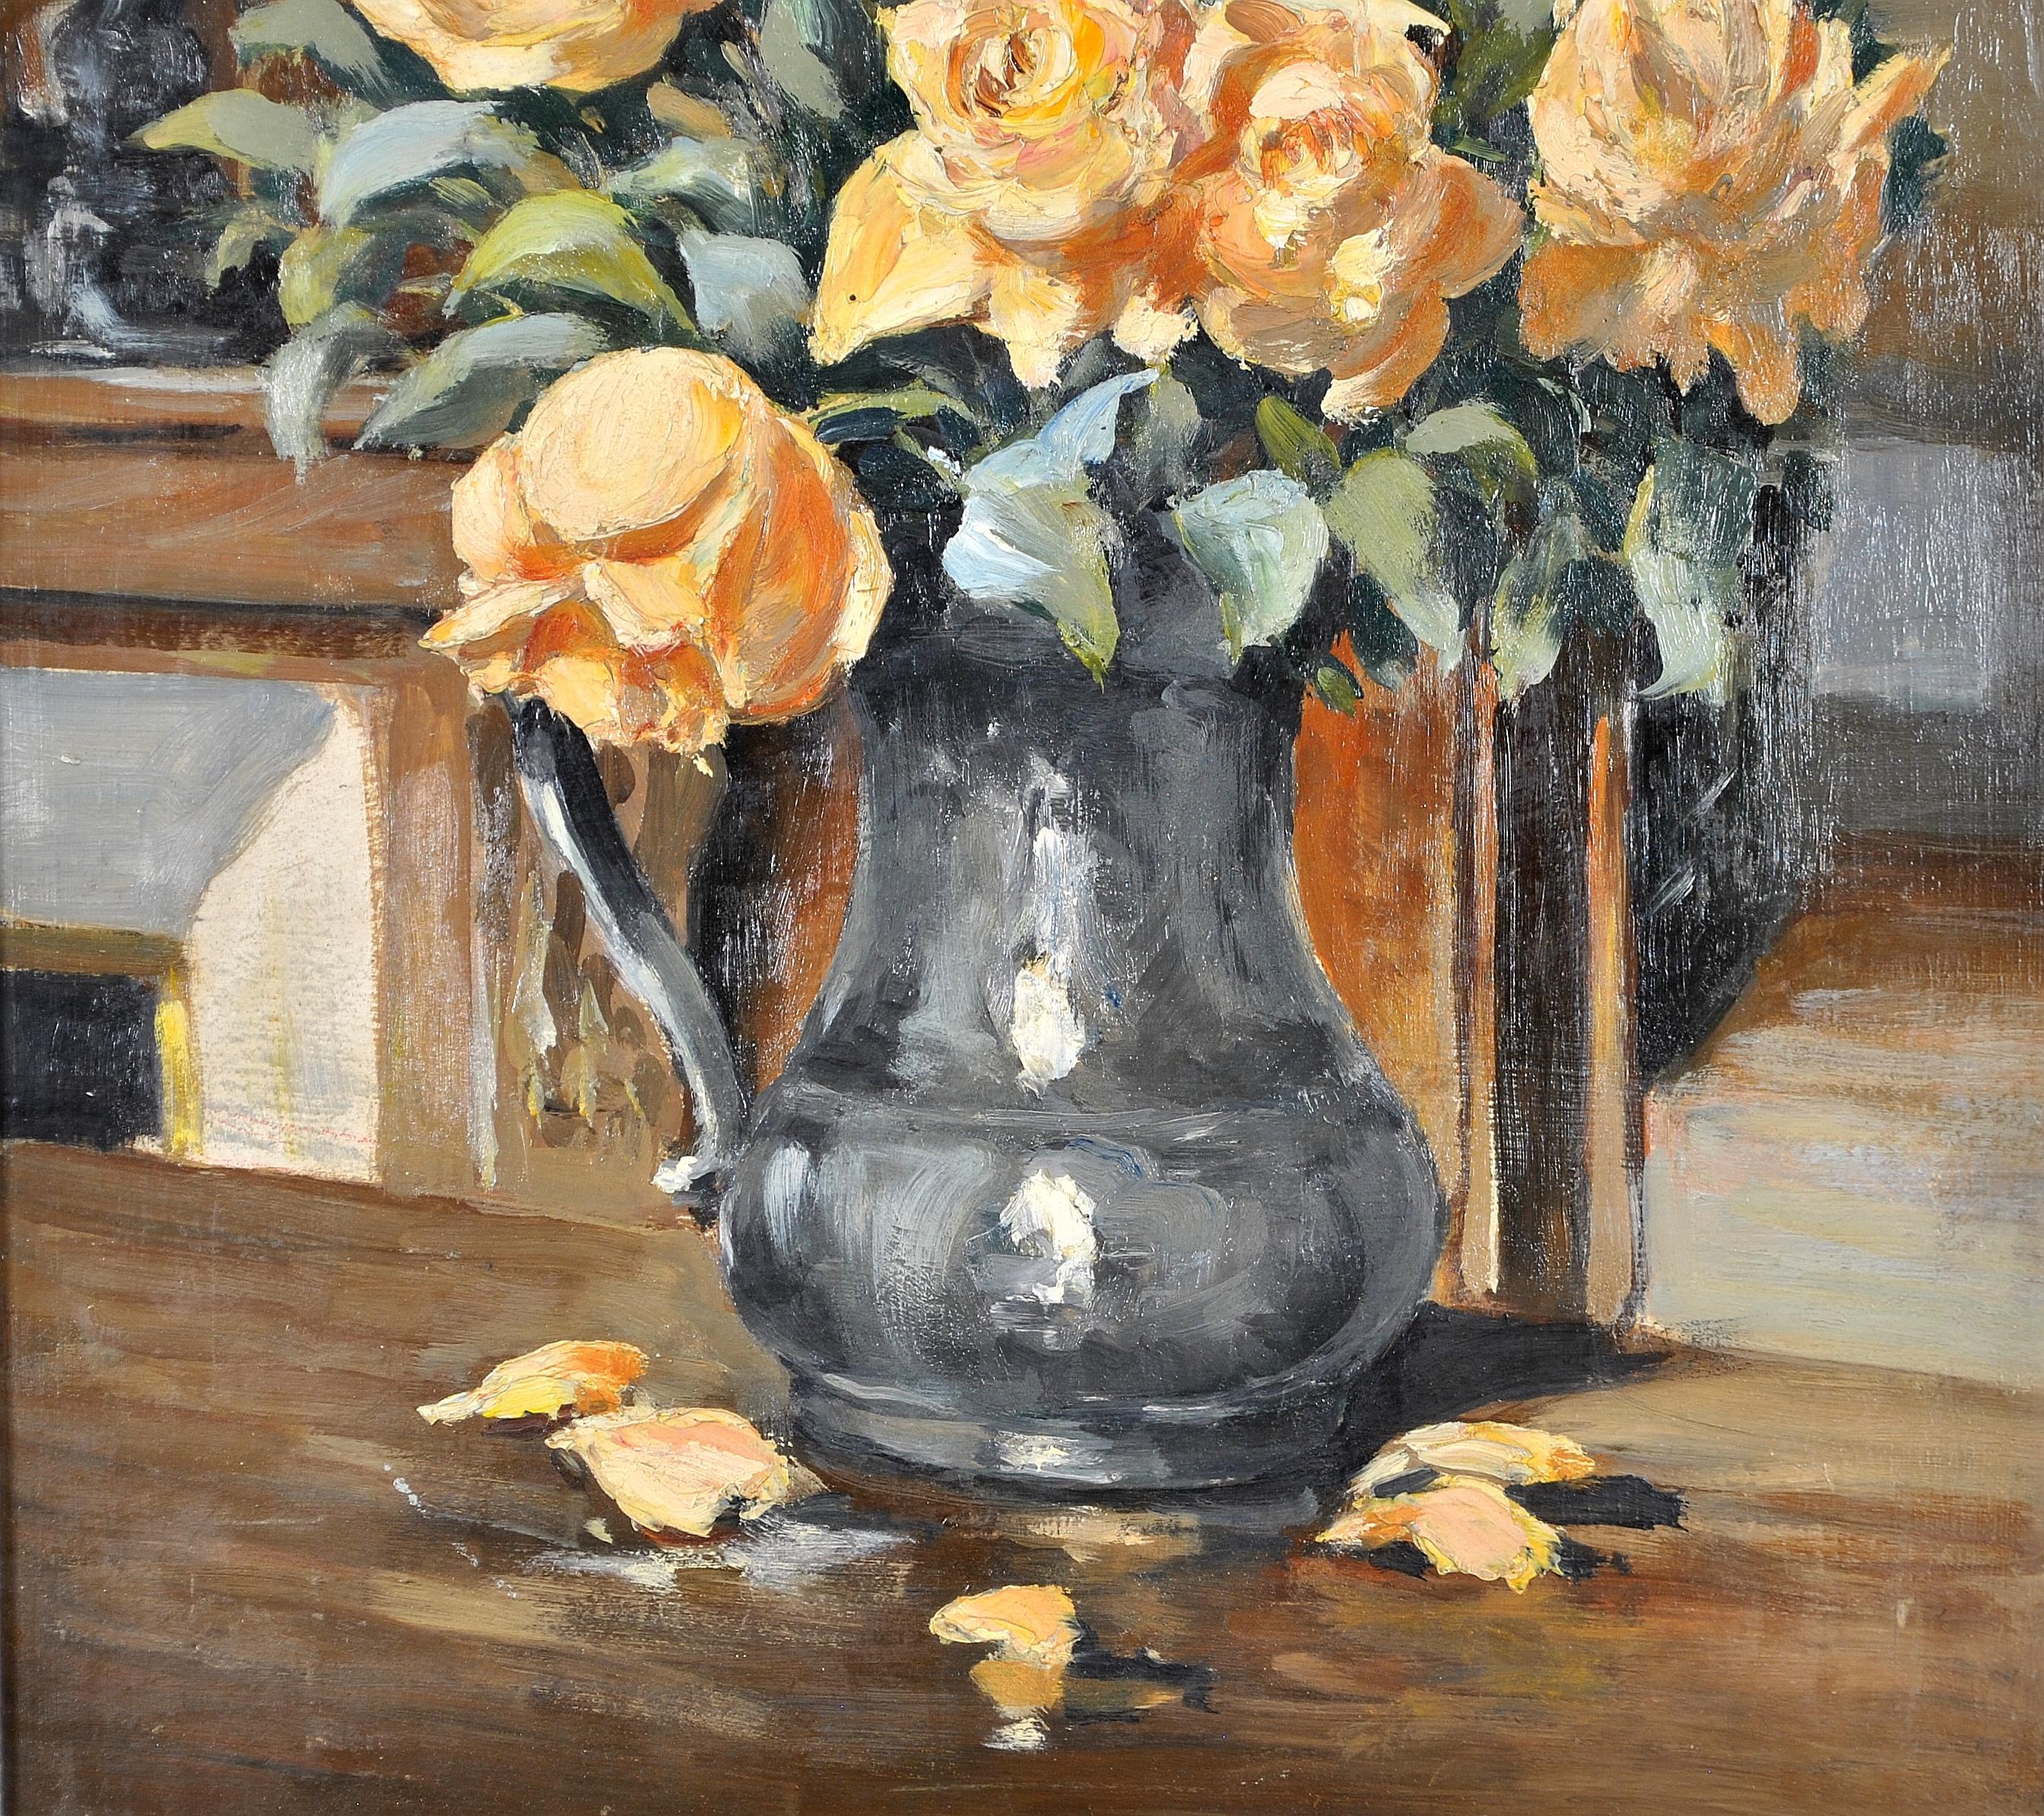 Roses dans une cruche - Nature morte à l'huile impressionniste française des années 1920 - Impressionnisme Painting par Early 20th Century French School